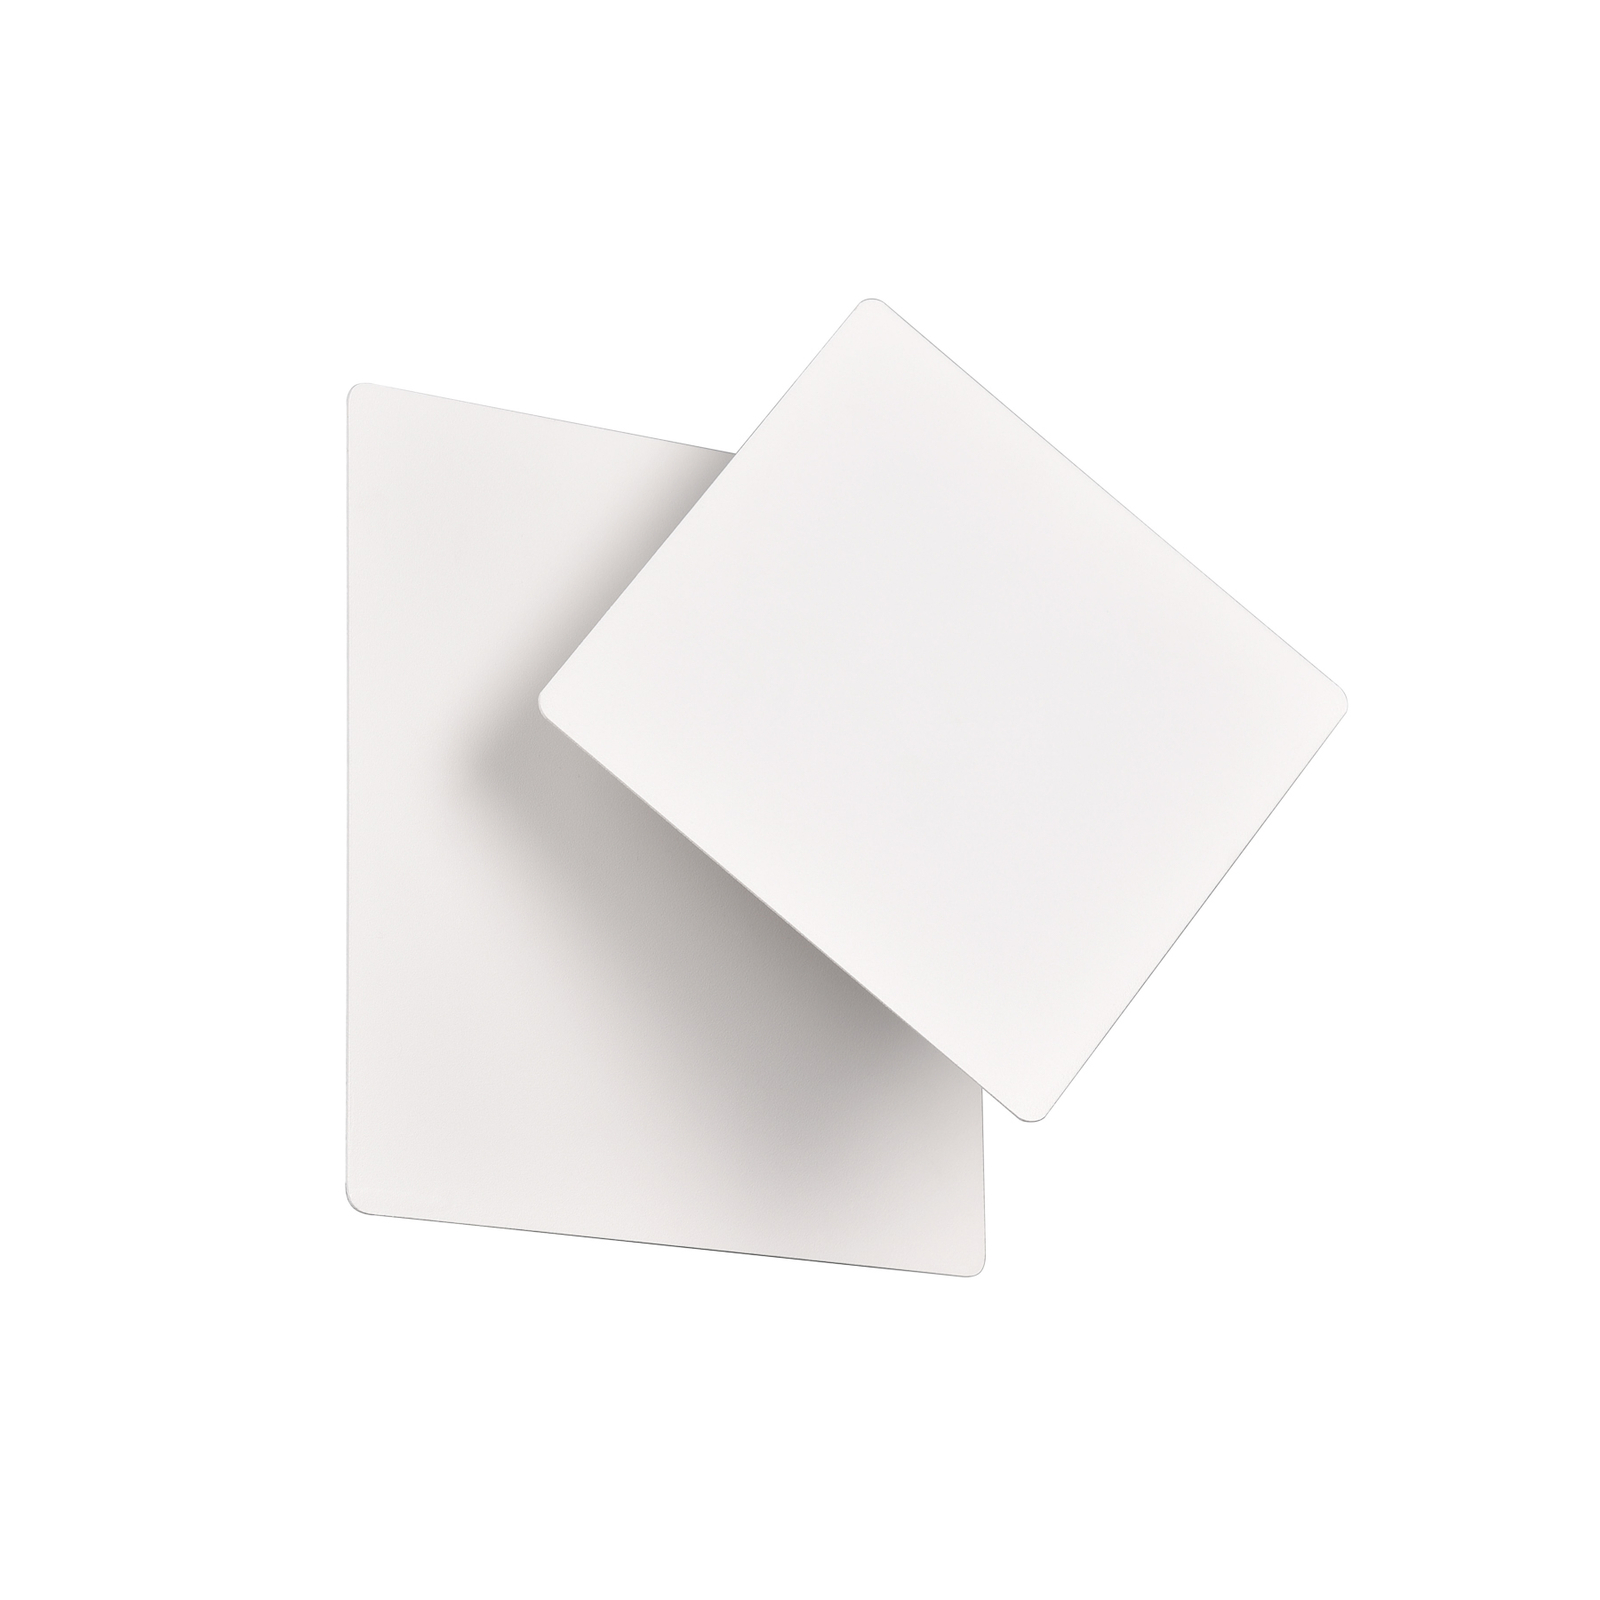 Nástěnné svítidlo LED Mio, čtvercová čočka, matná bílá, nepřímé osvětlení